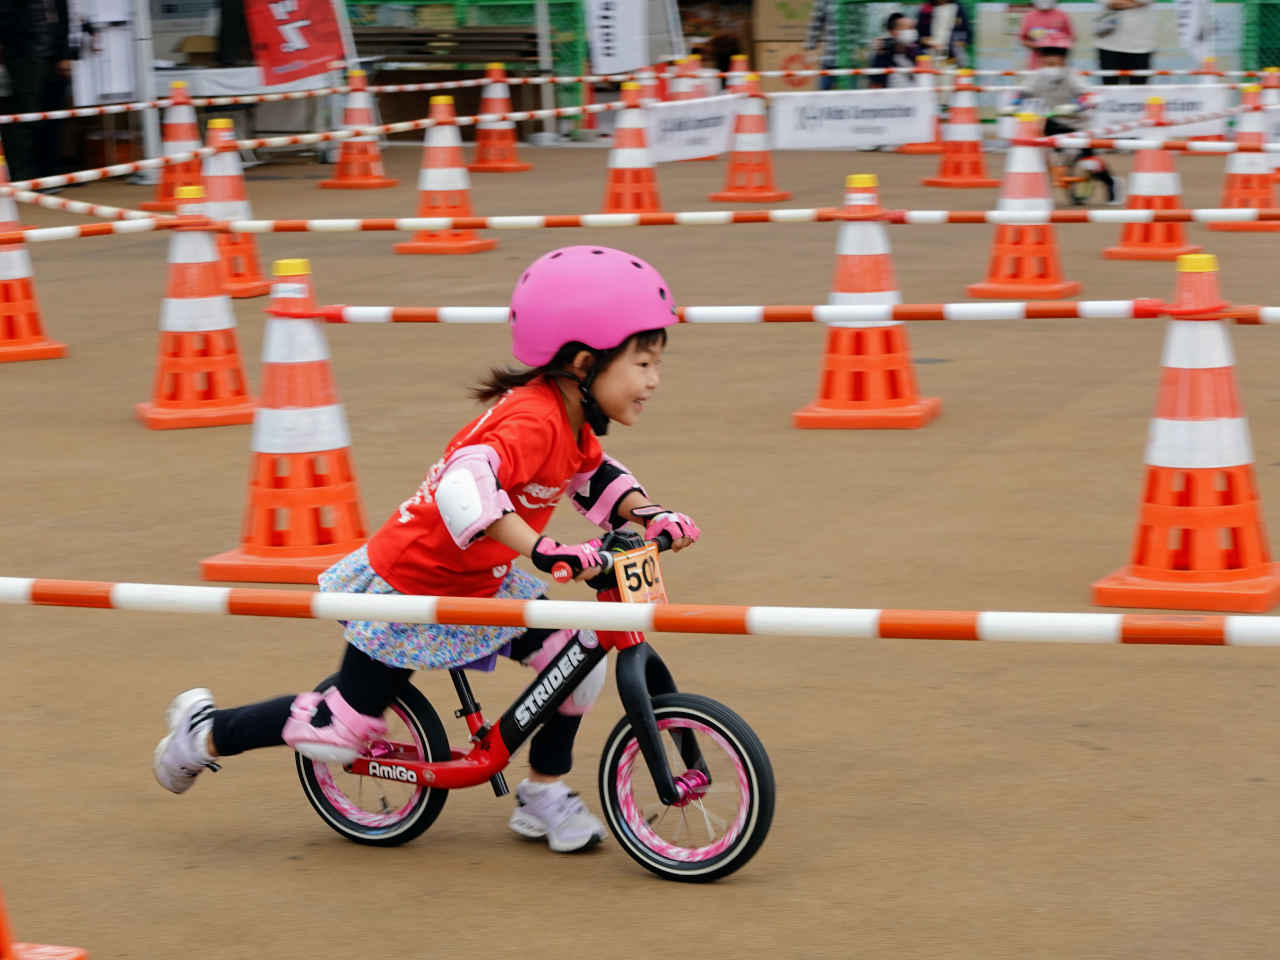 ストライダー大会 ジャパンカップキックバイク大会に出場する5歳女の子